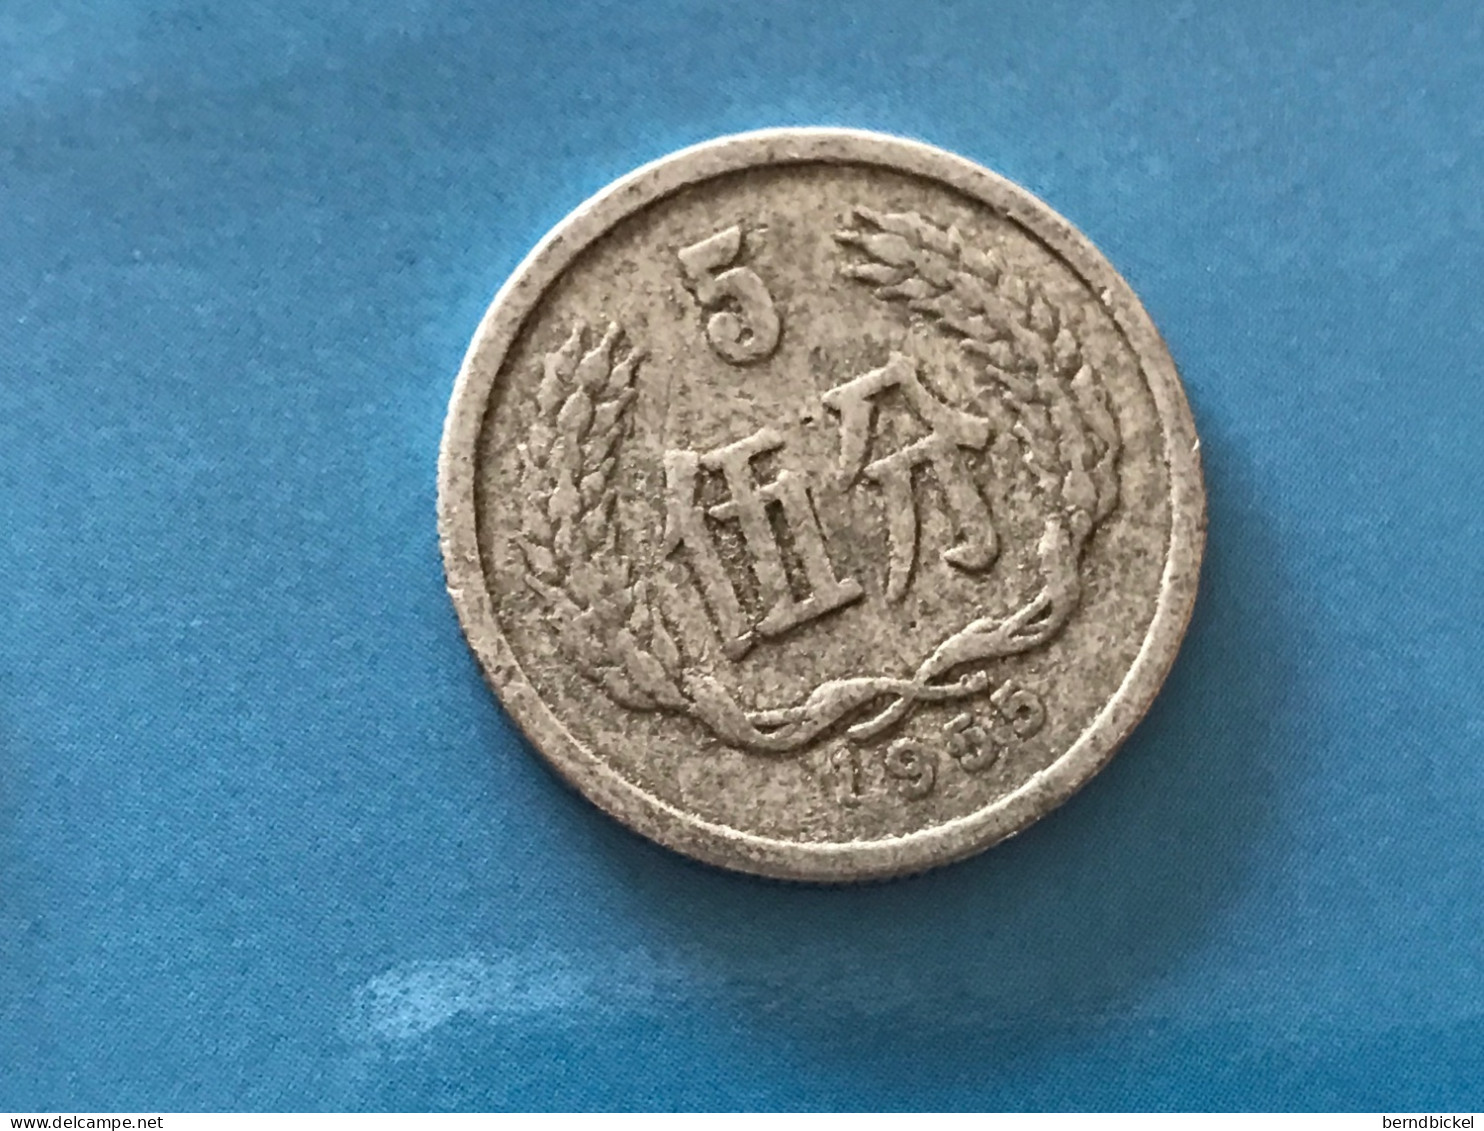 Münze Münzen Umlaufmünze China 5 Fen 1955 - China